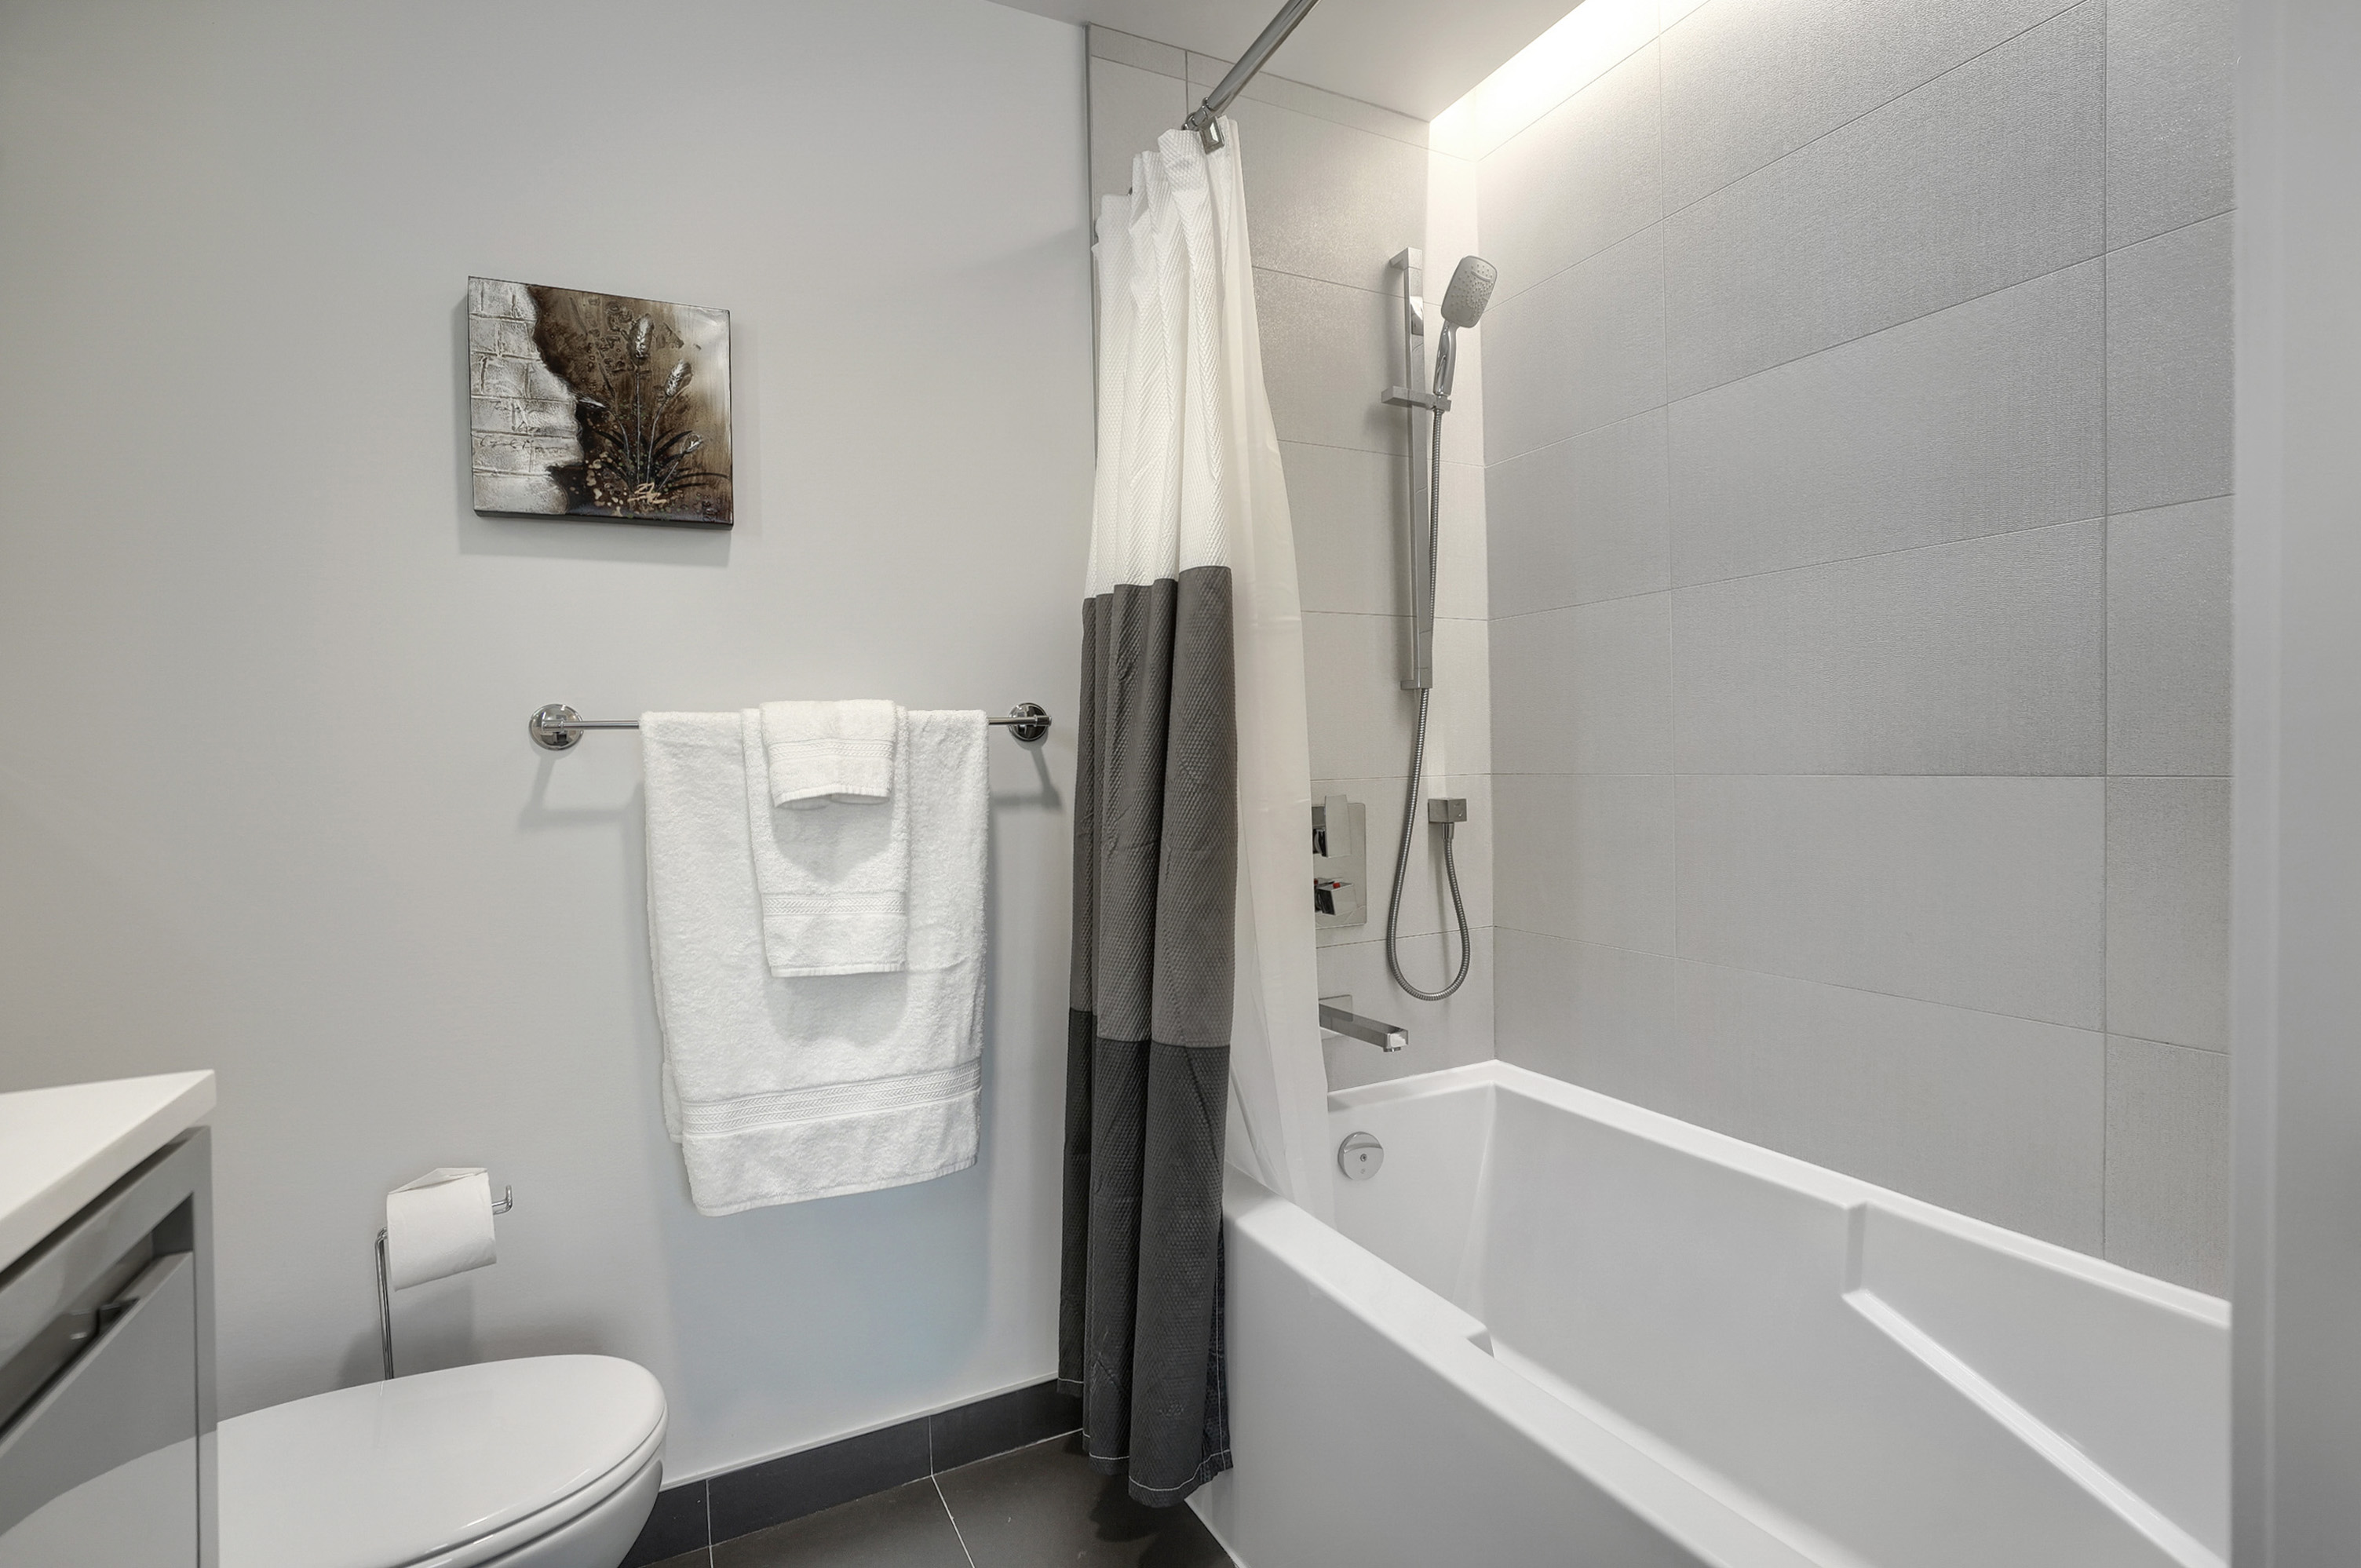 Vue en angle de la salle de bain moderne de cet appartement meublé de luxe à Montréal. Tube blanc moderne avec bords carrés, pomme de douche réglable, serviettes en peluche blanches. Accents blancs et gris partout